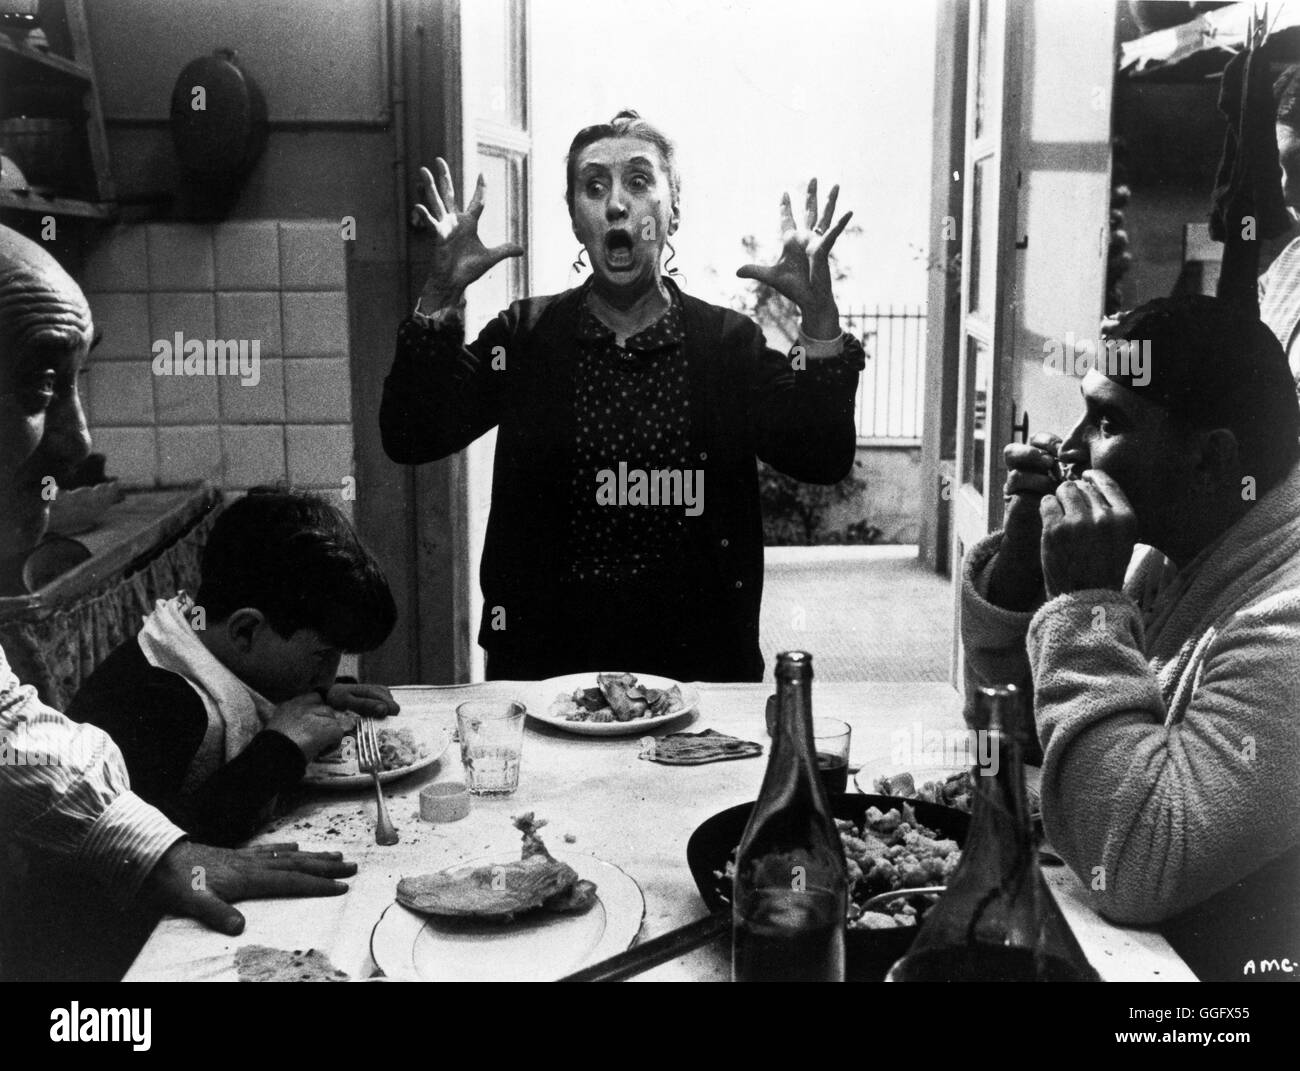 AMARCORD / Amarcord Italien 1974 / Federico Fellini BRUNO ZANIN, Armando BRANCIA PUPELLA Maggio, en Fellinis 'Amarcord', de 1974. Regie: Federico Fellini aka. Amarcord Foto de stock